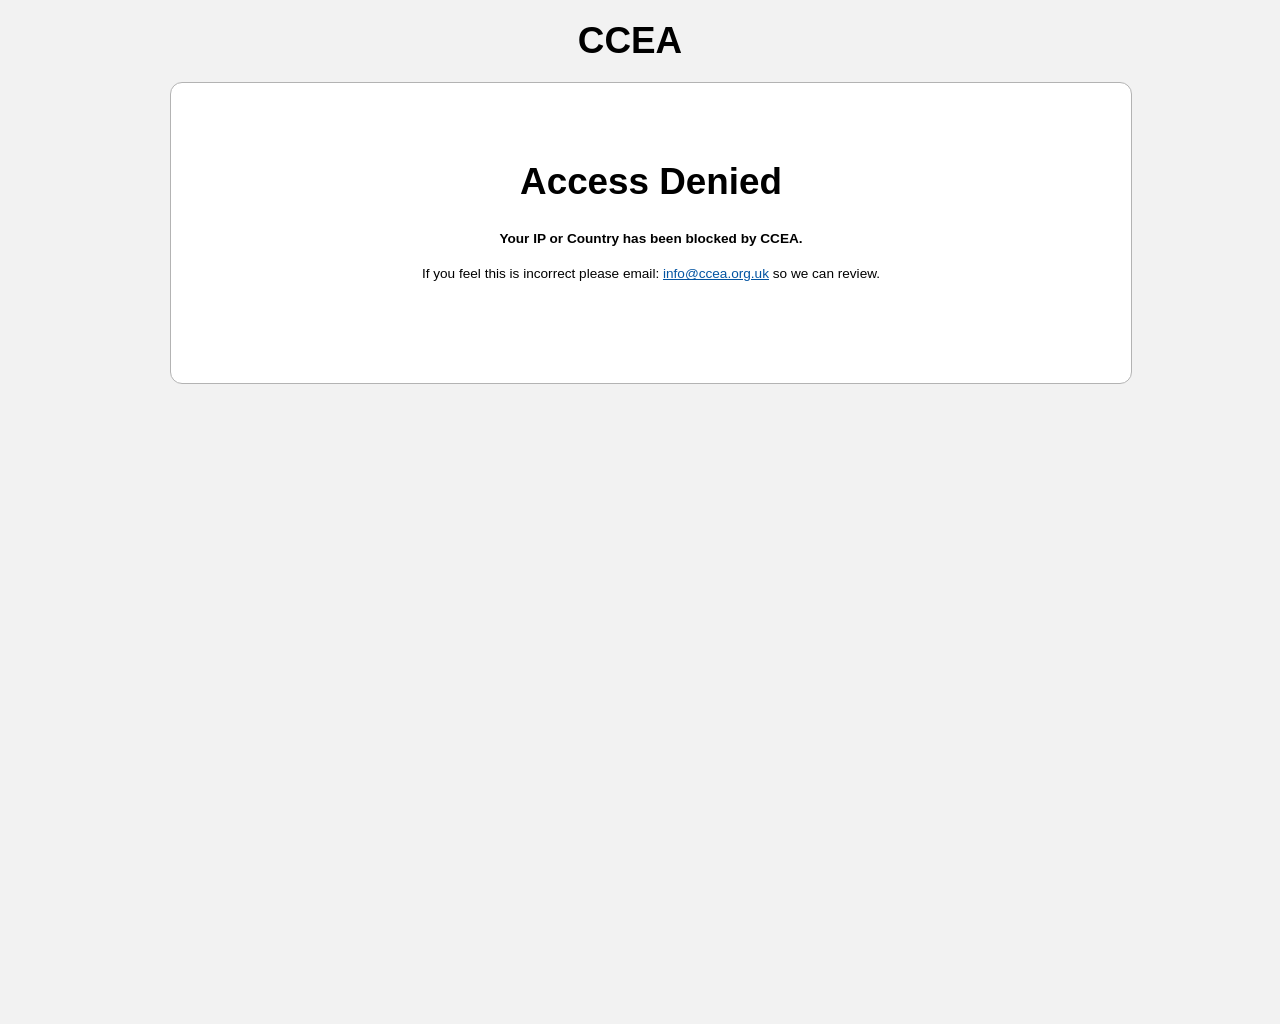 CCEA WEBSITE